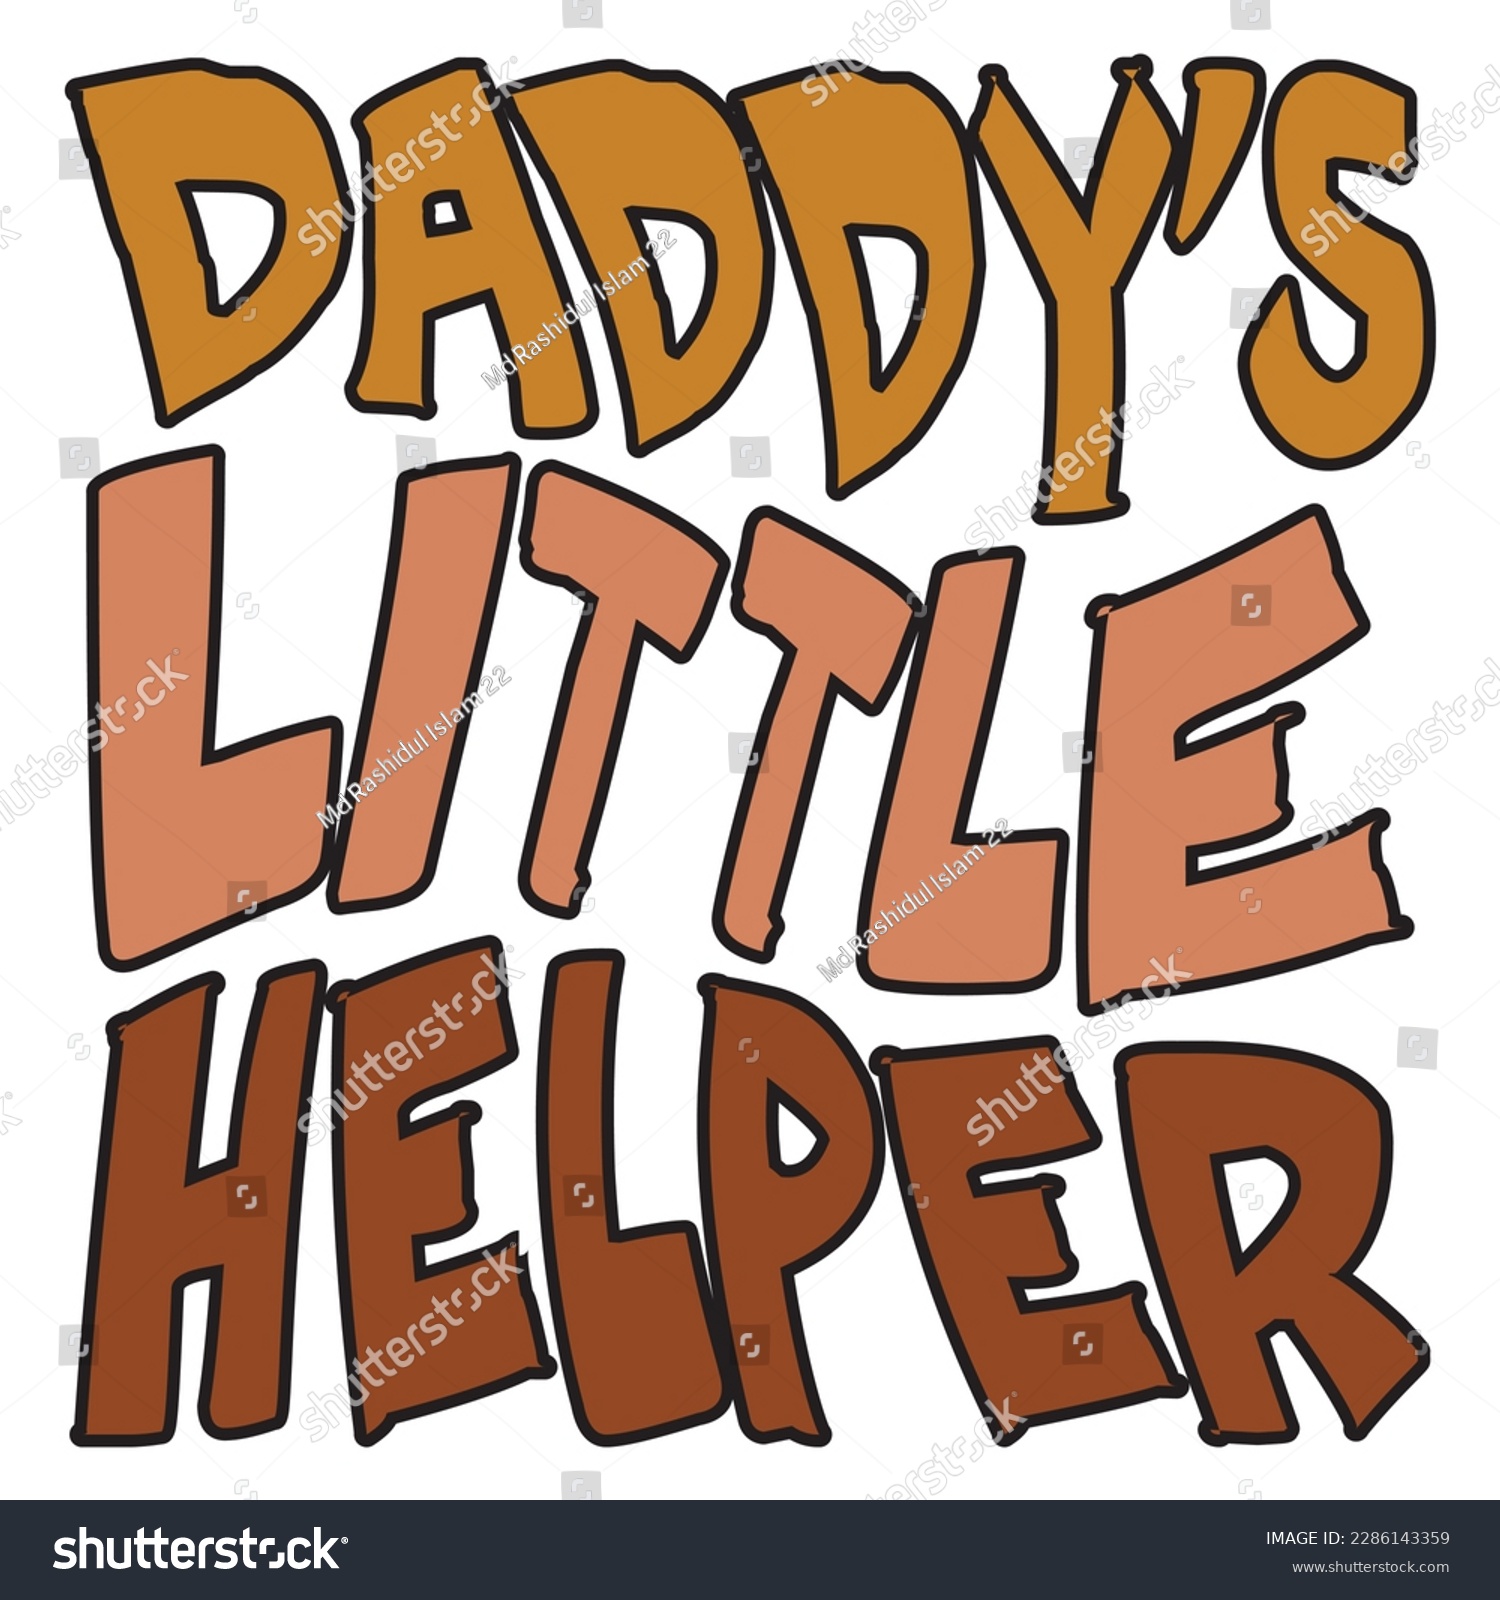 SVG of Daddy's Little Helper Retro SVG Design Vector File. svg